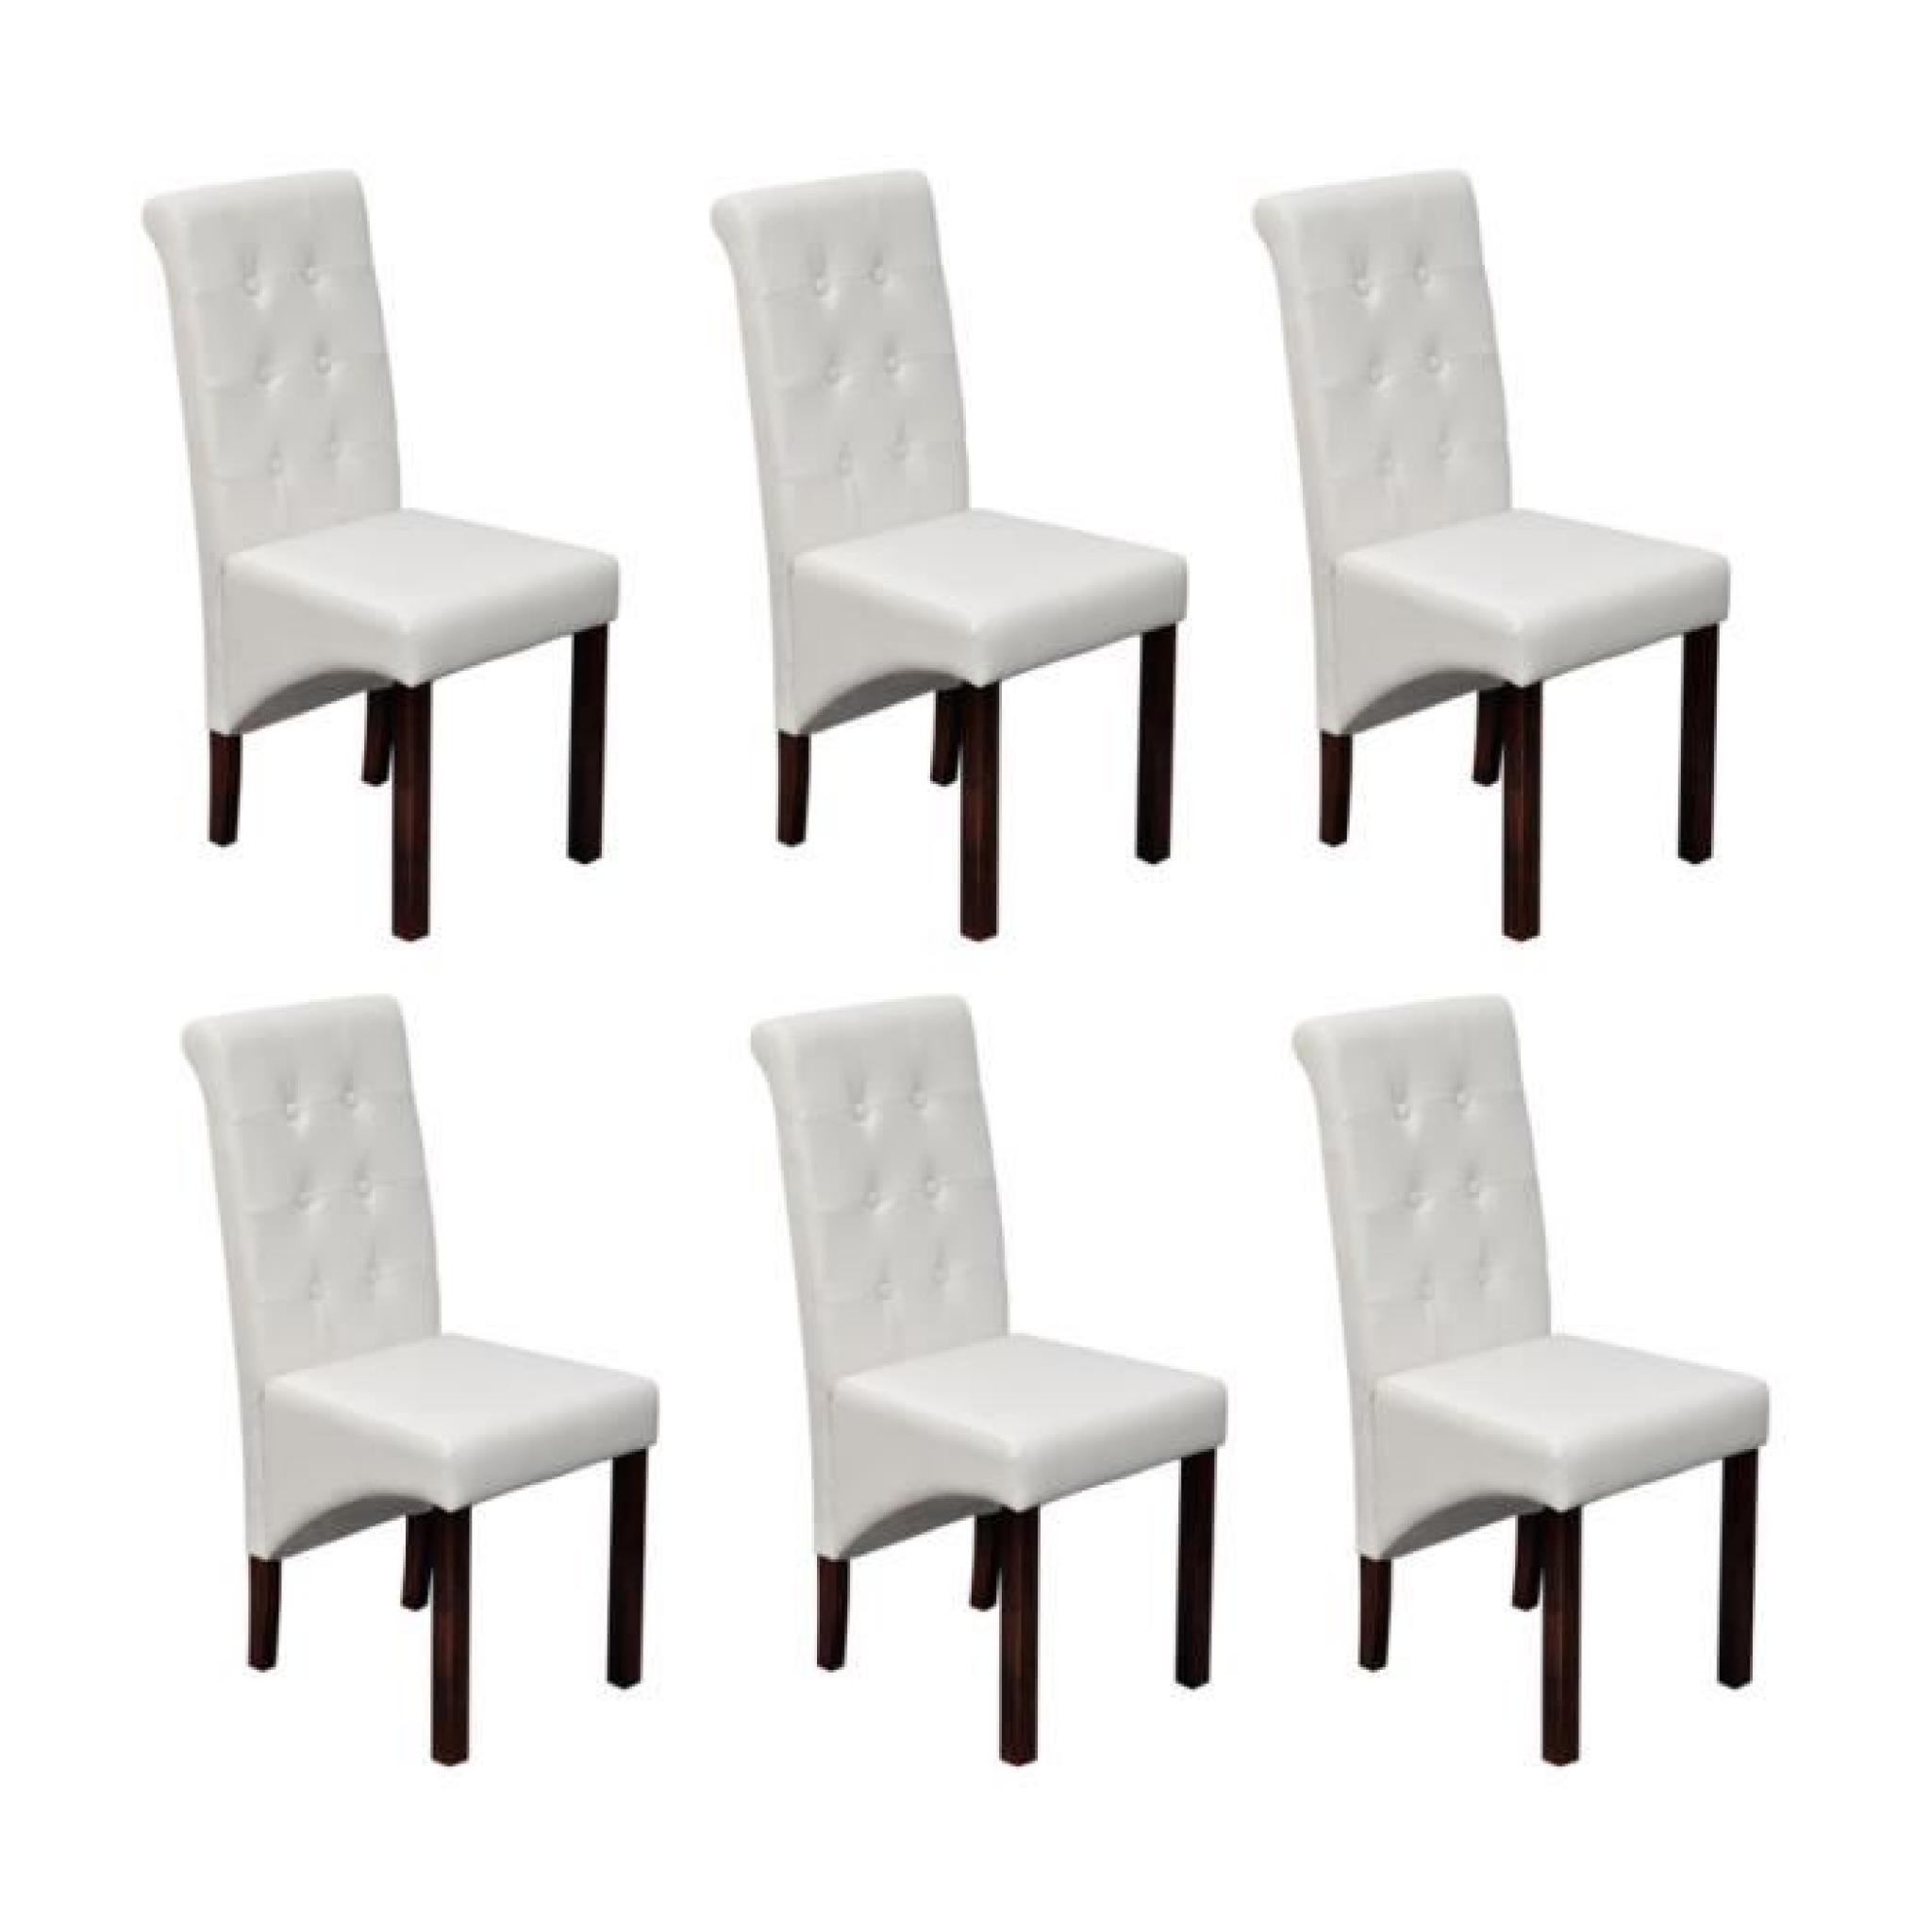 6 Chaises antique simili cuir blanc pas cher